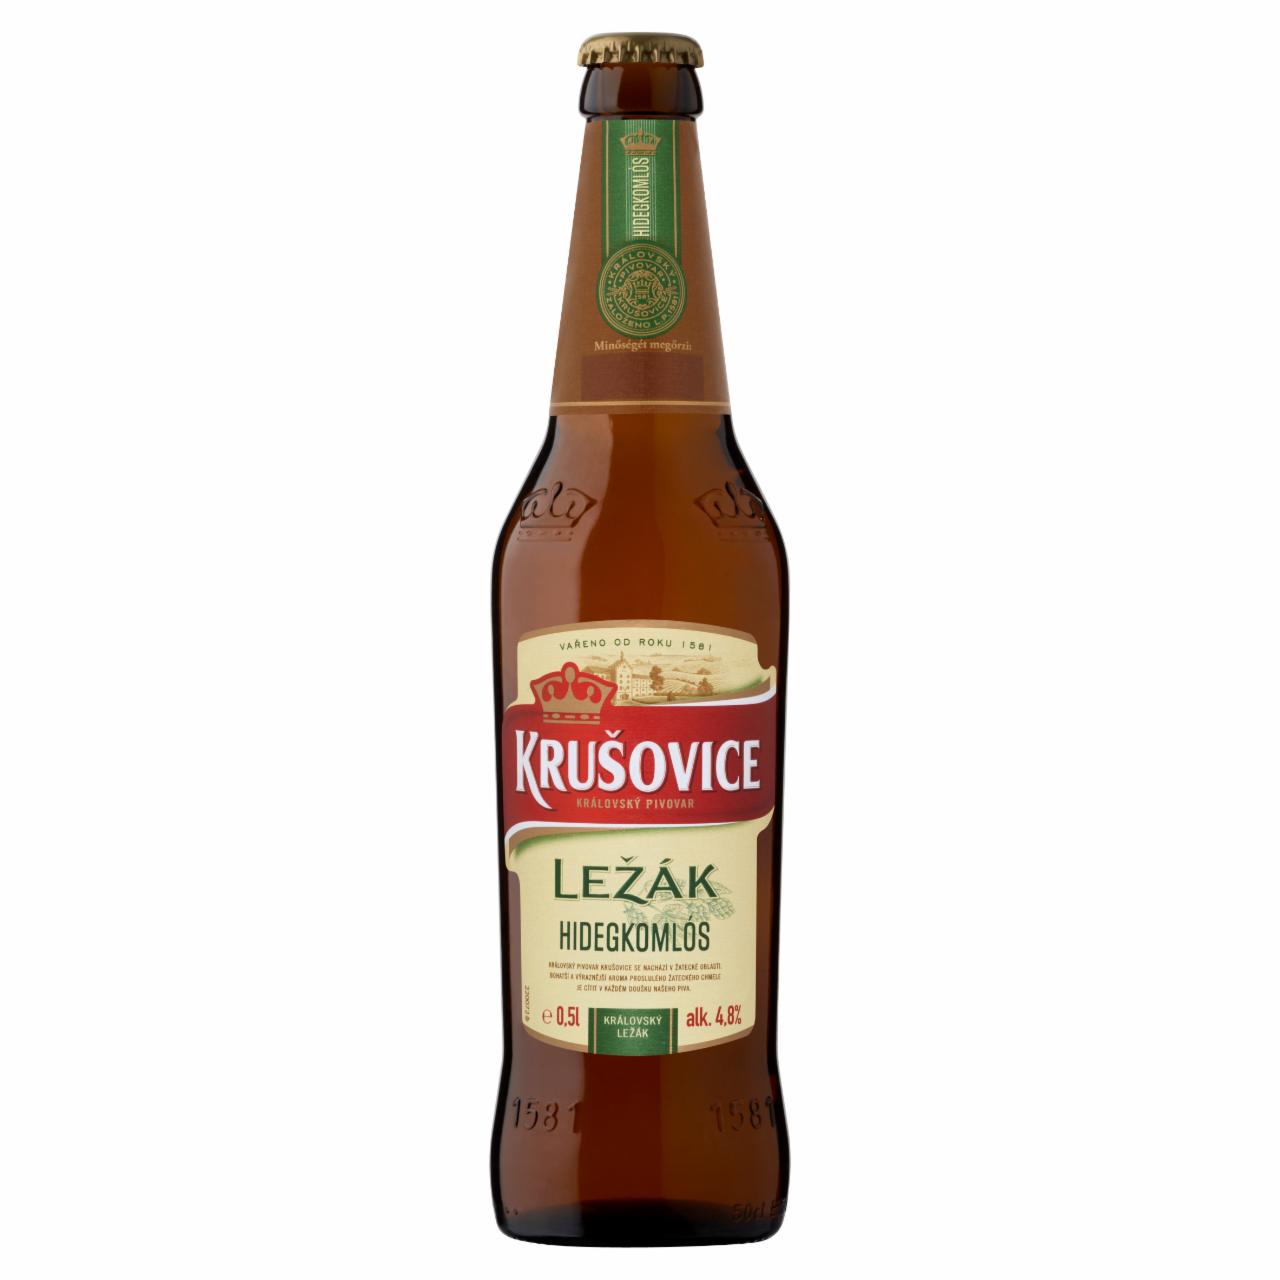 Képek - Krušovice Ležák Hidegkomlós eredeti cseh import minőségi világos sör 4,8% 0,5 l üveg